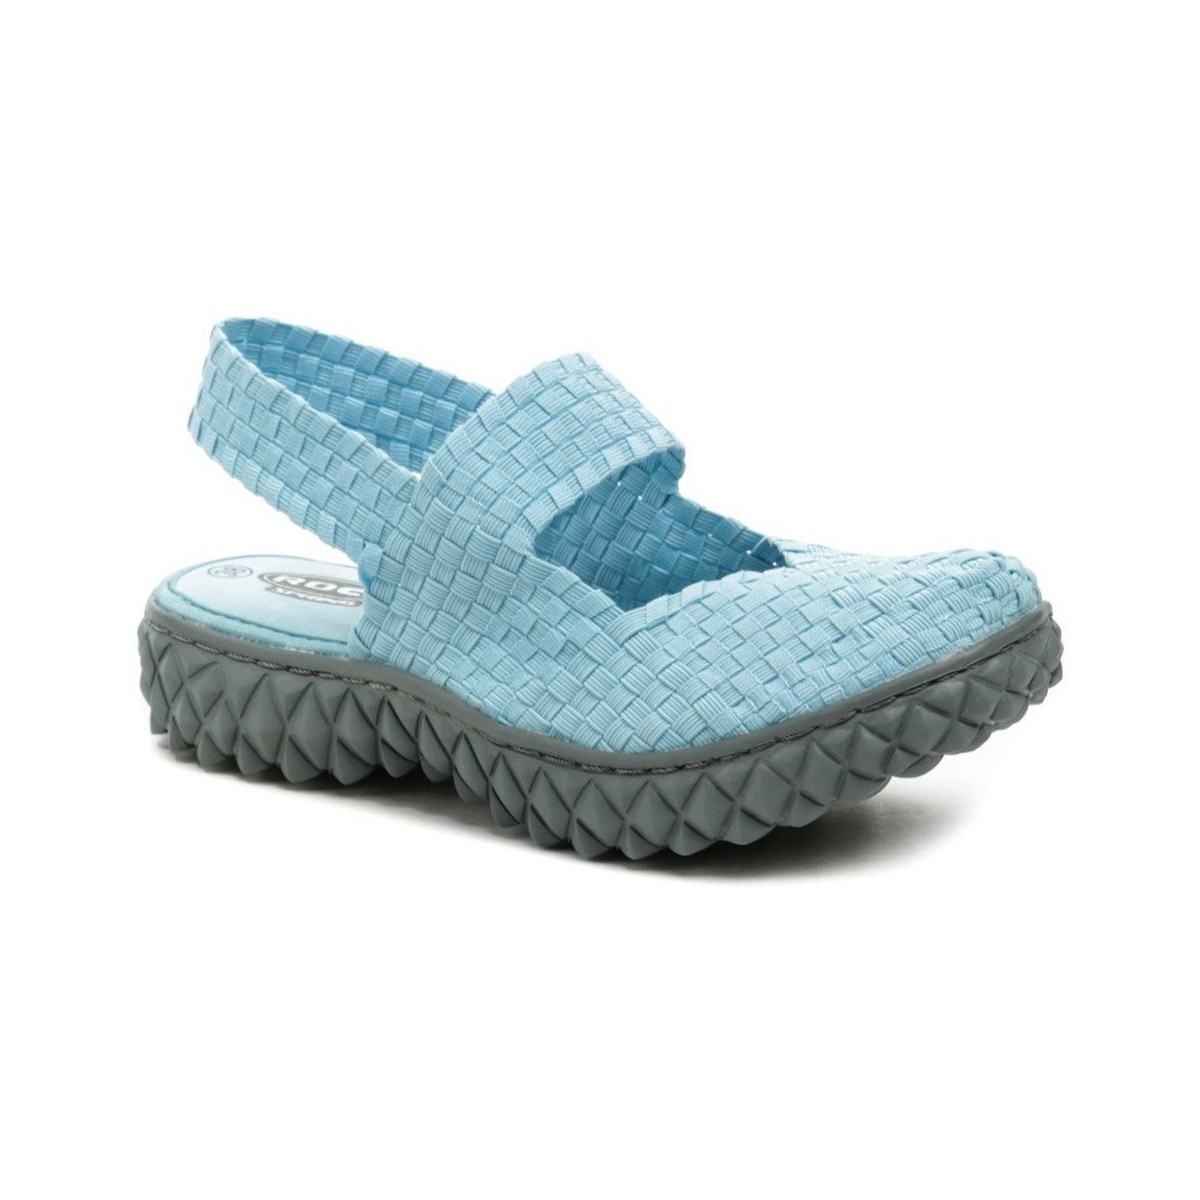 Boty Ženy Nízké tenisky Rock Spring OVER SANDAL LT BLUE dámská gumičková obuv Modrá